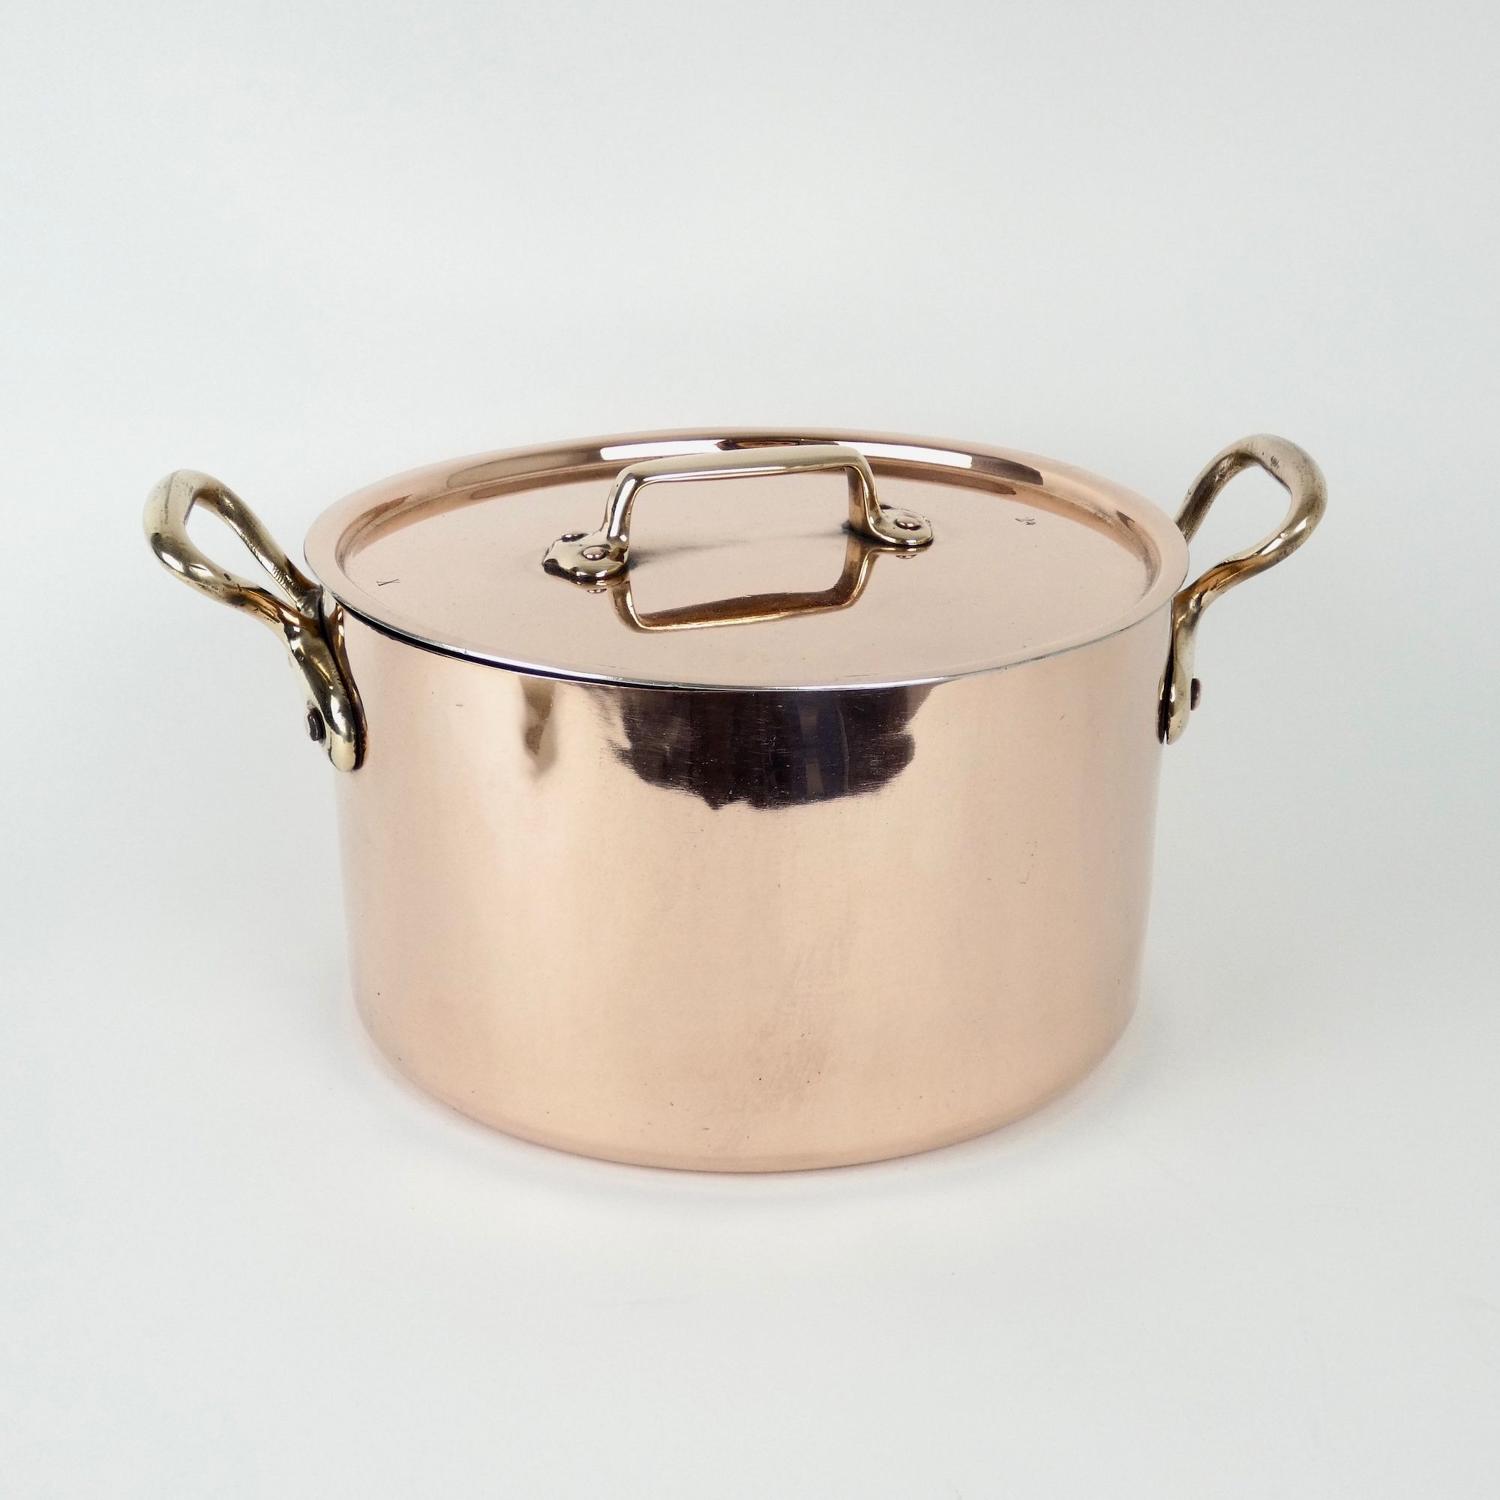 French copper casserole